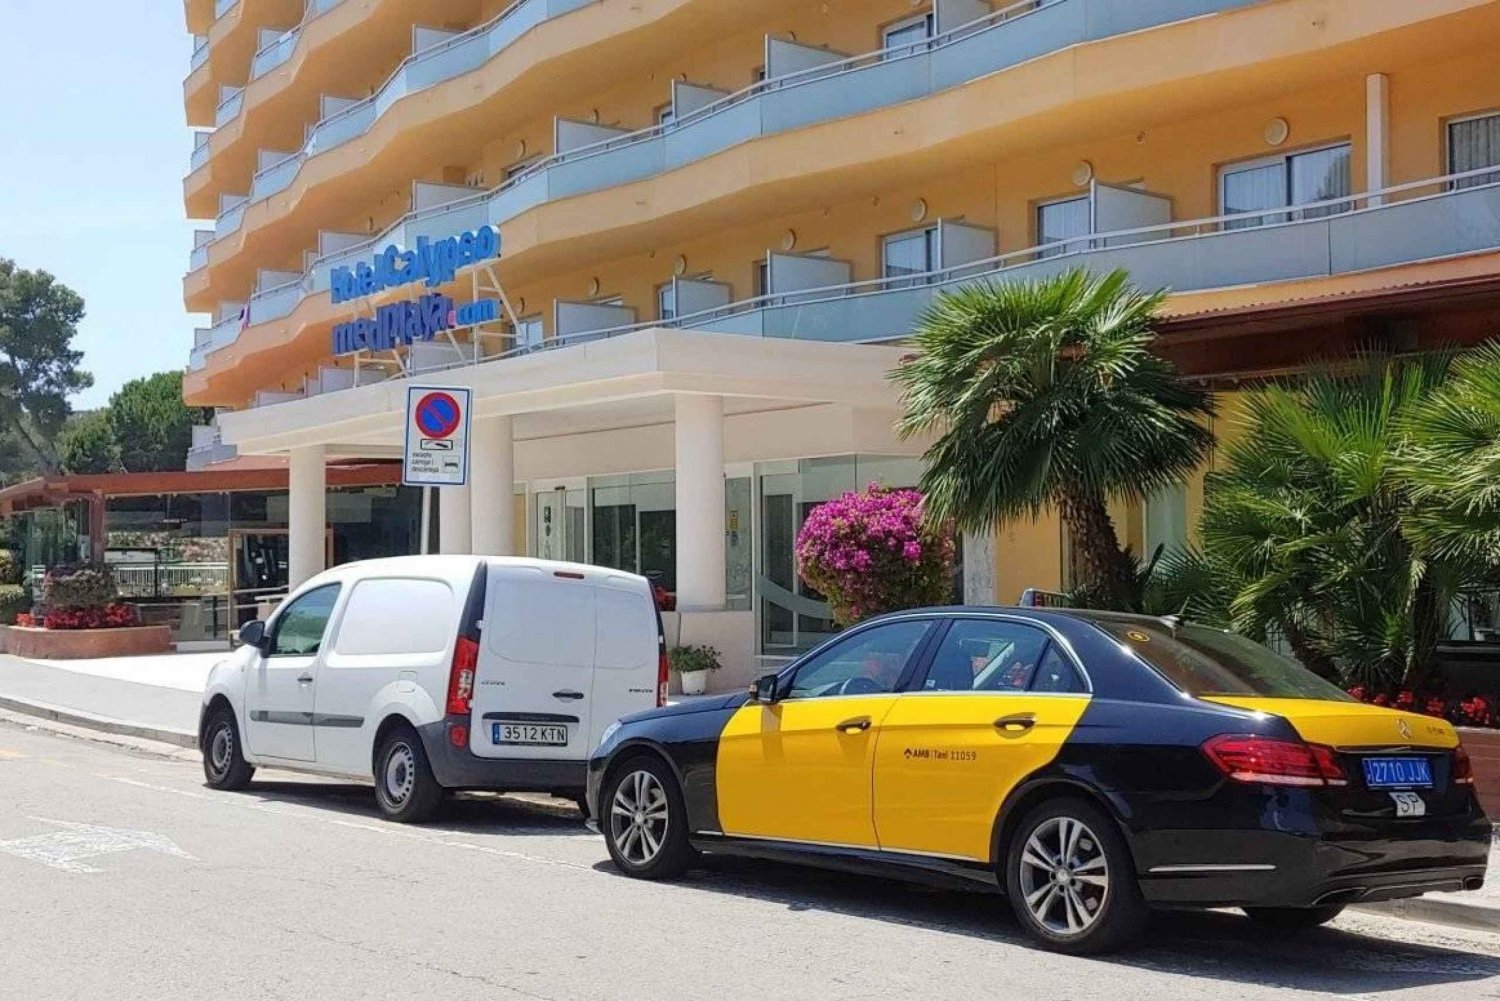 Flughafen Barcelona: Buche einen Taxitransfer zu deinem Hotel